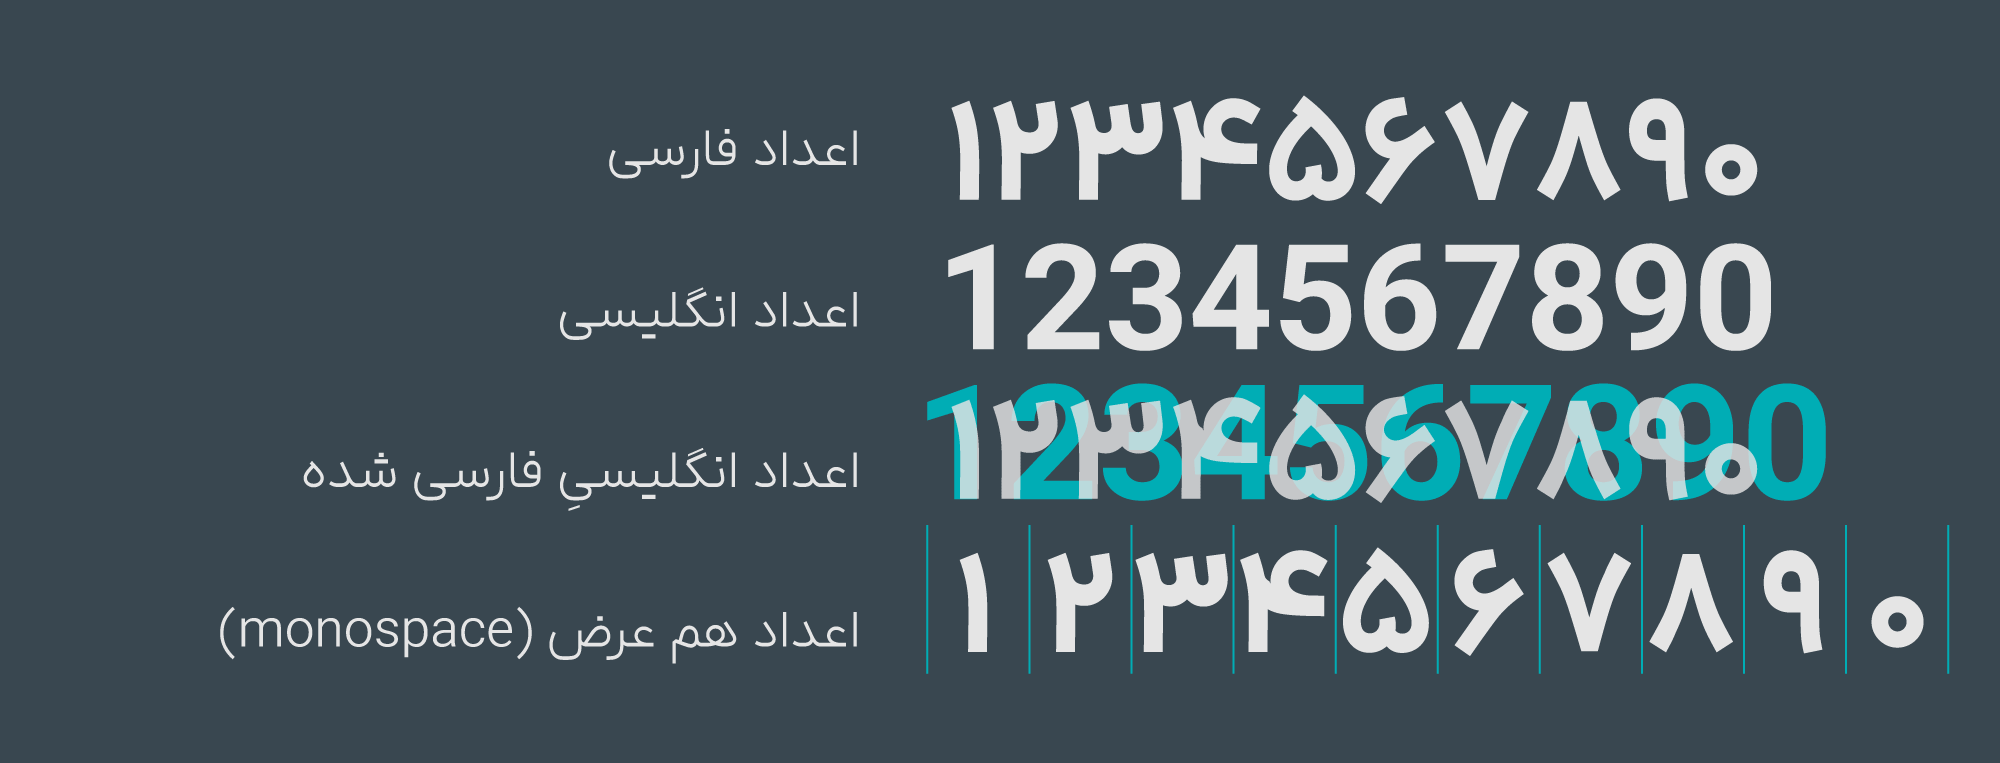 فارسی کردن اعداد فونت